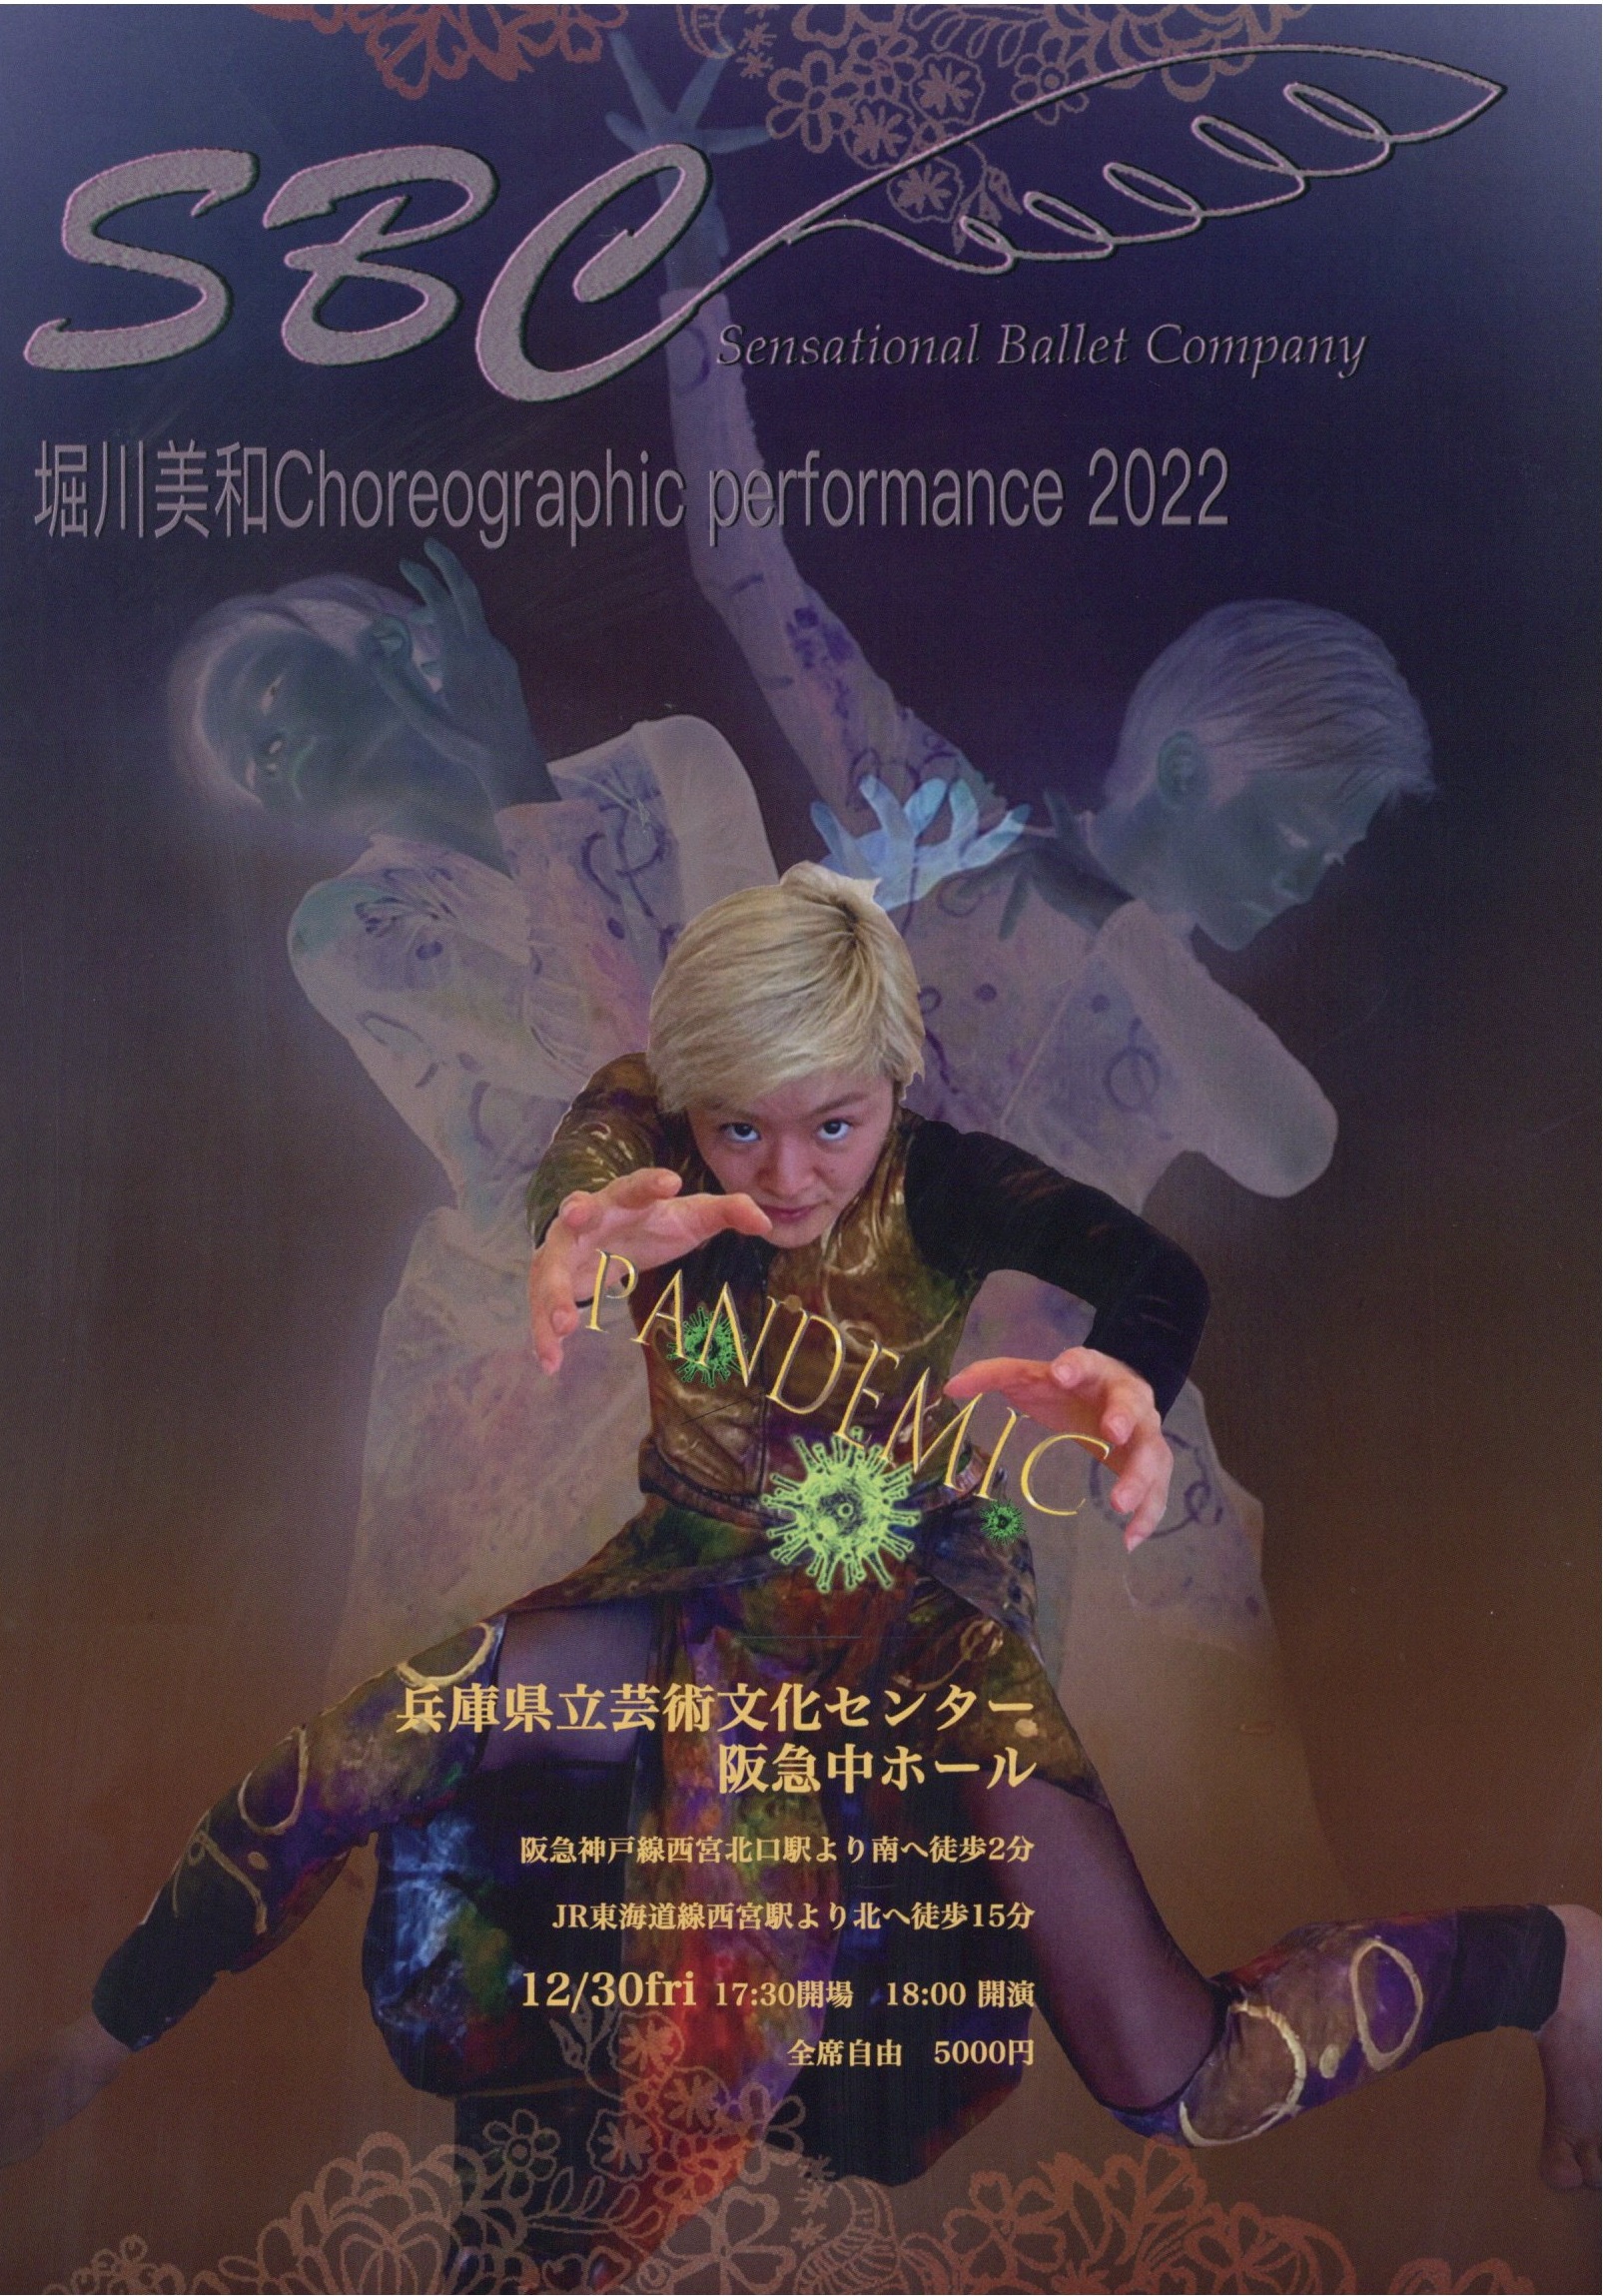 堀川美和 Choreographic Performance